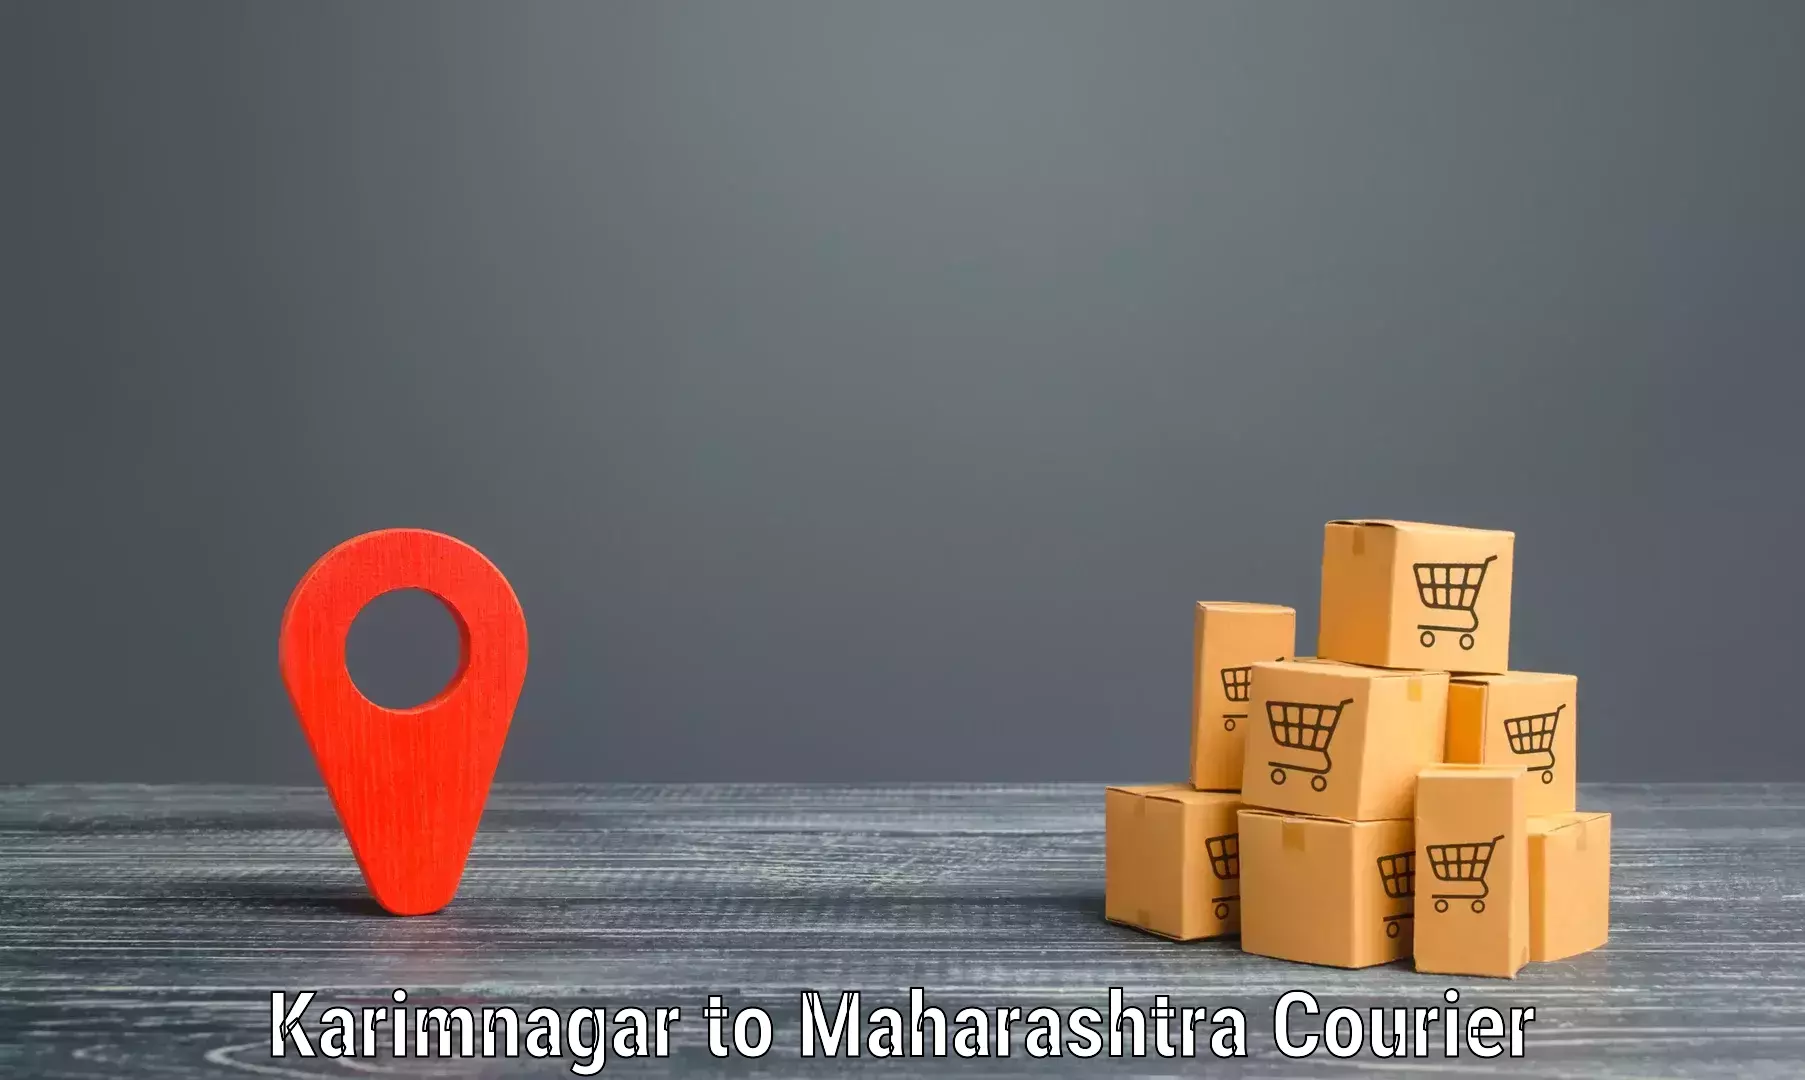 Modern courier technology Karimnagar to Chopda